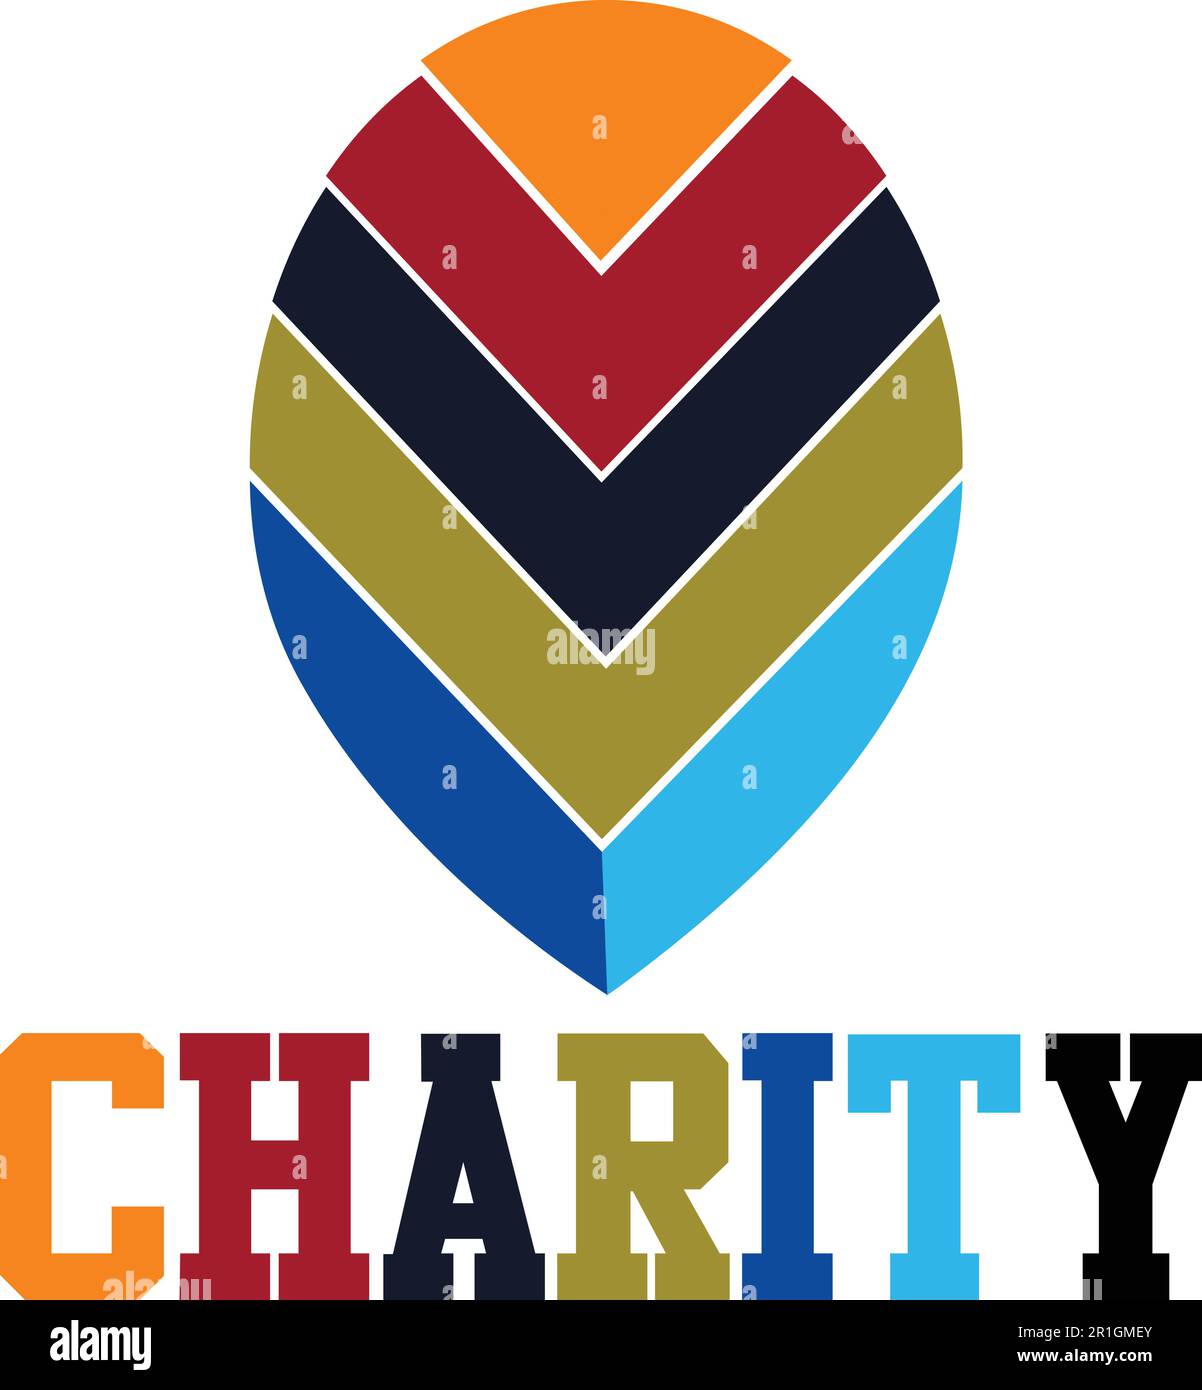 Wir stellen vor: Die Charity Logo-Vorlage, ein farbenfrohes und auffälliges Design, das sich perfekt für gemeinnützige Organisationen und Wohltätigkeitsorganisationen eignet, die eine Memora erstellen möchten Stock Vektor